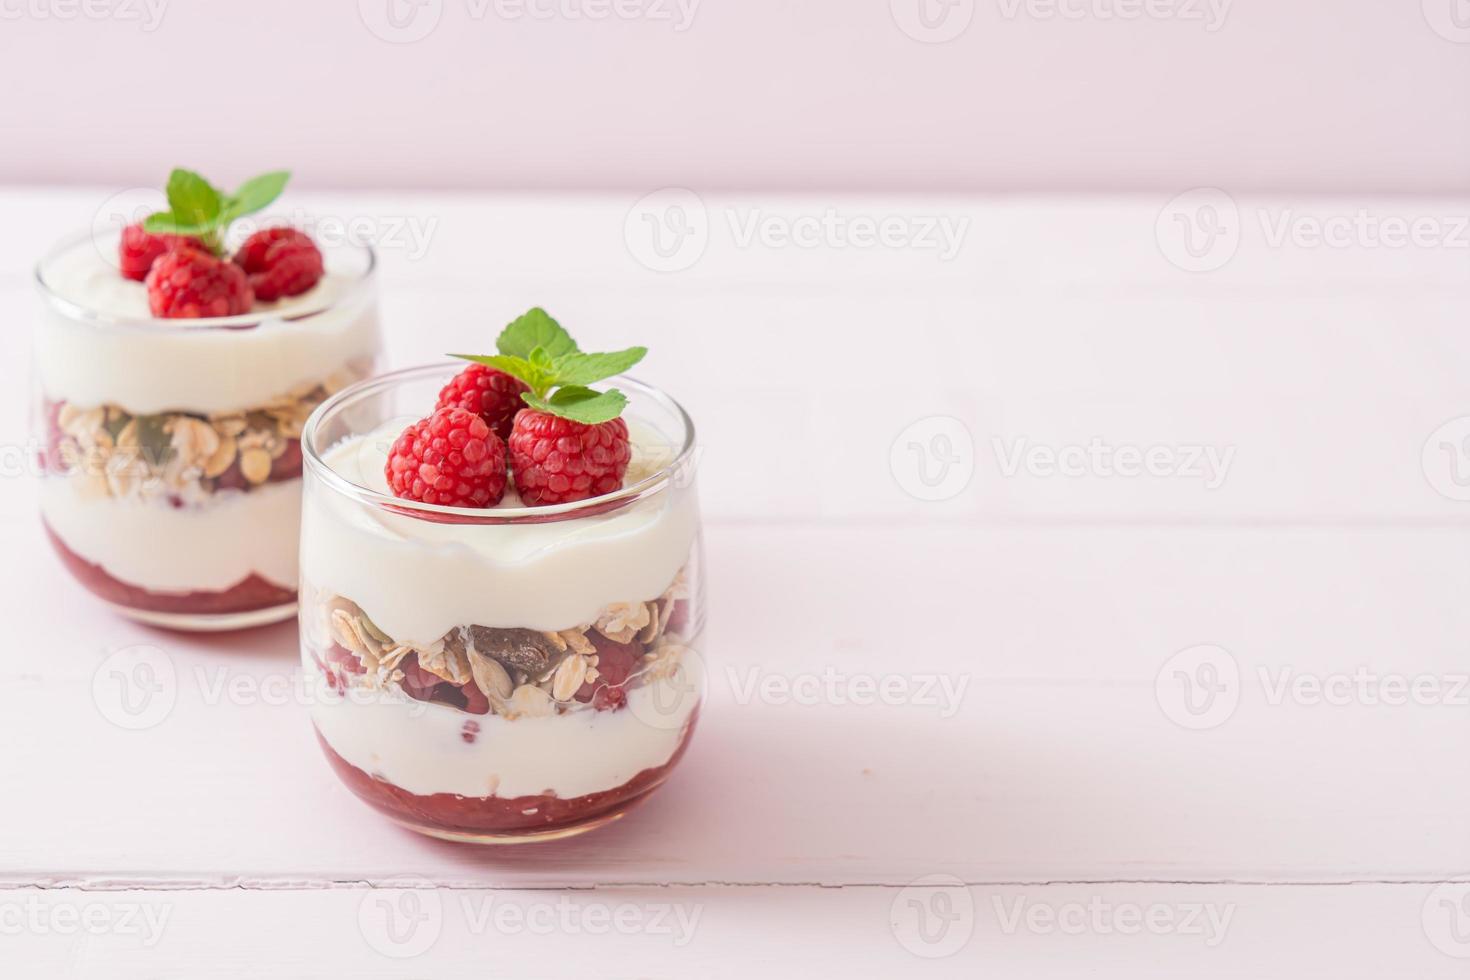 Framboesa fresca e iogurte com granola - estilo de comida saudável foto